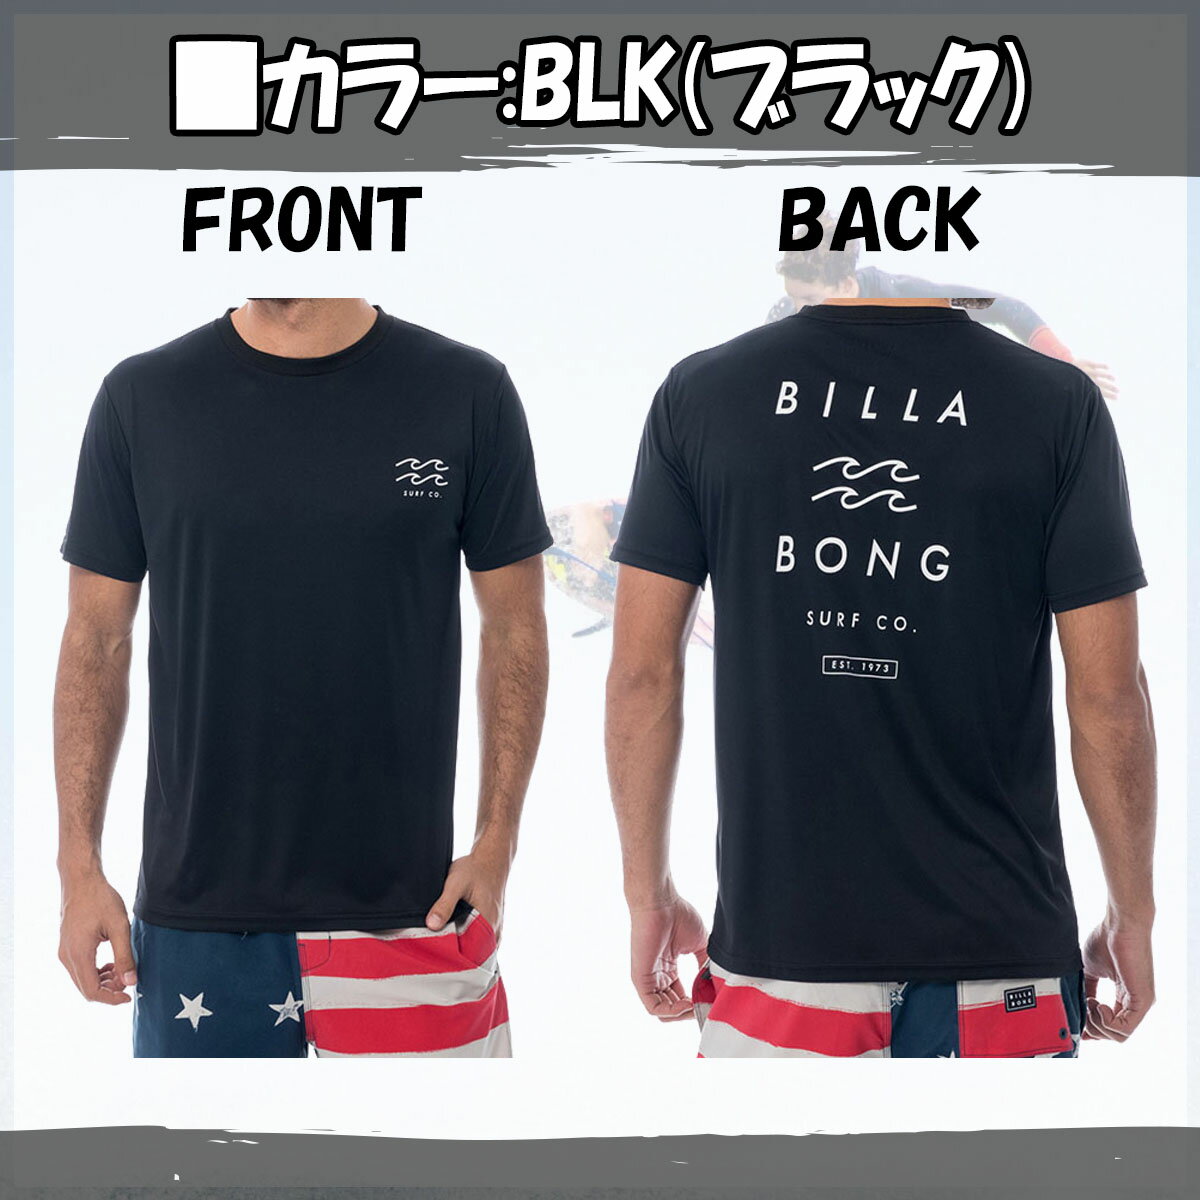 19 BILLABONG ビラボン 半袖 ラッシュガード Tシャツ メンズ 2019年春夏モデル 品番 AJ011-871 日本正規品